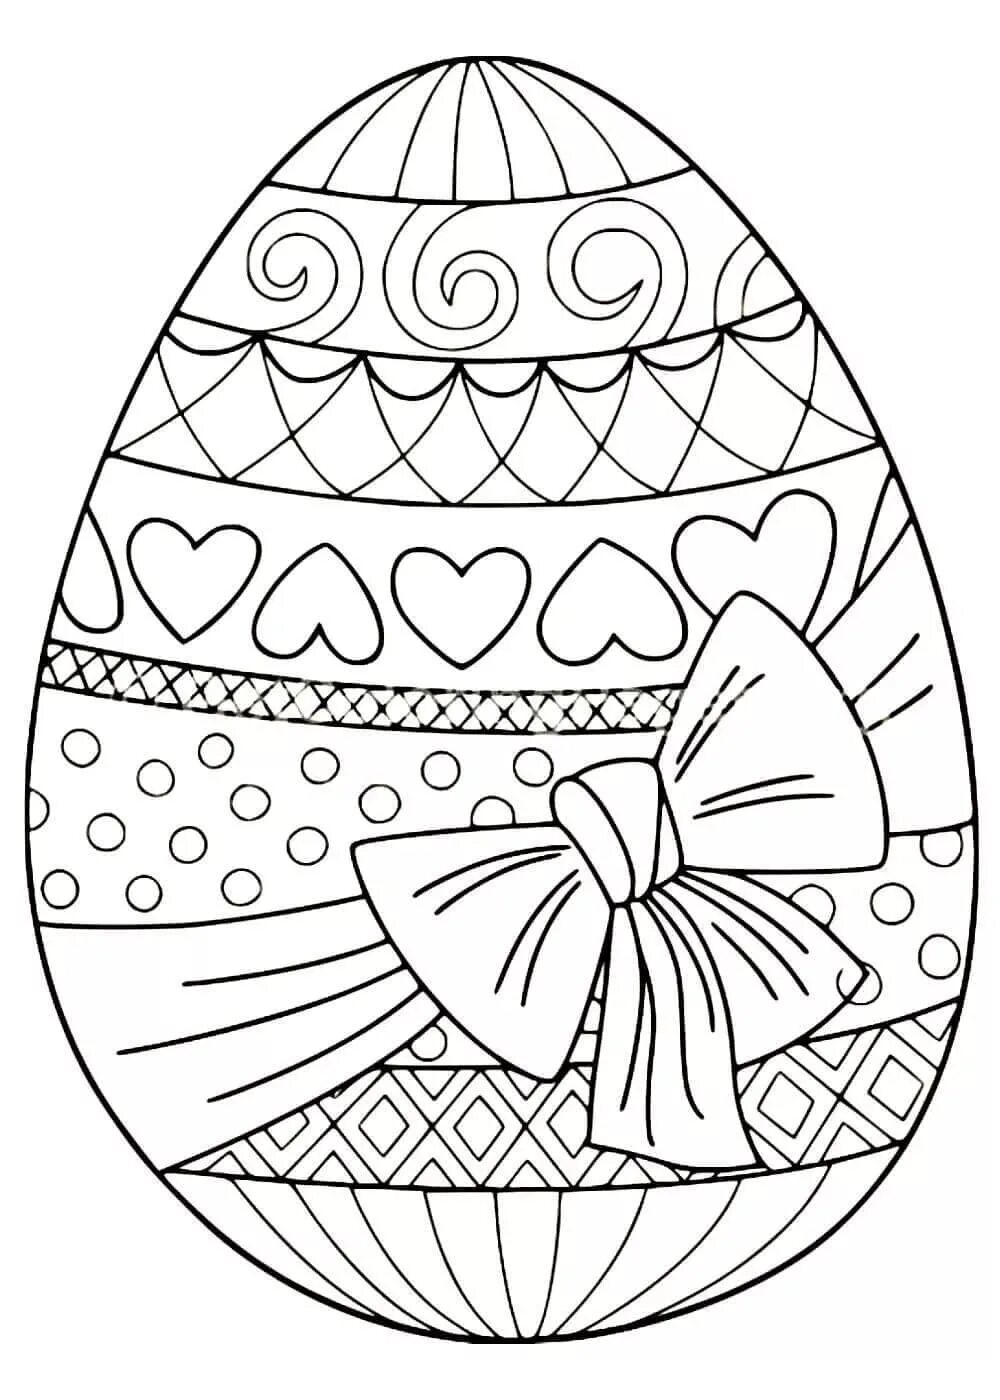 Пасхальное яйцо раскраска. Раскраски пасхальные для детей. Пасхальное яйцо раскраска для детей. Пасхальные яйца для раскрашивания. Распечатать раскраску яйца